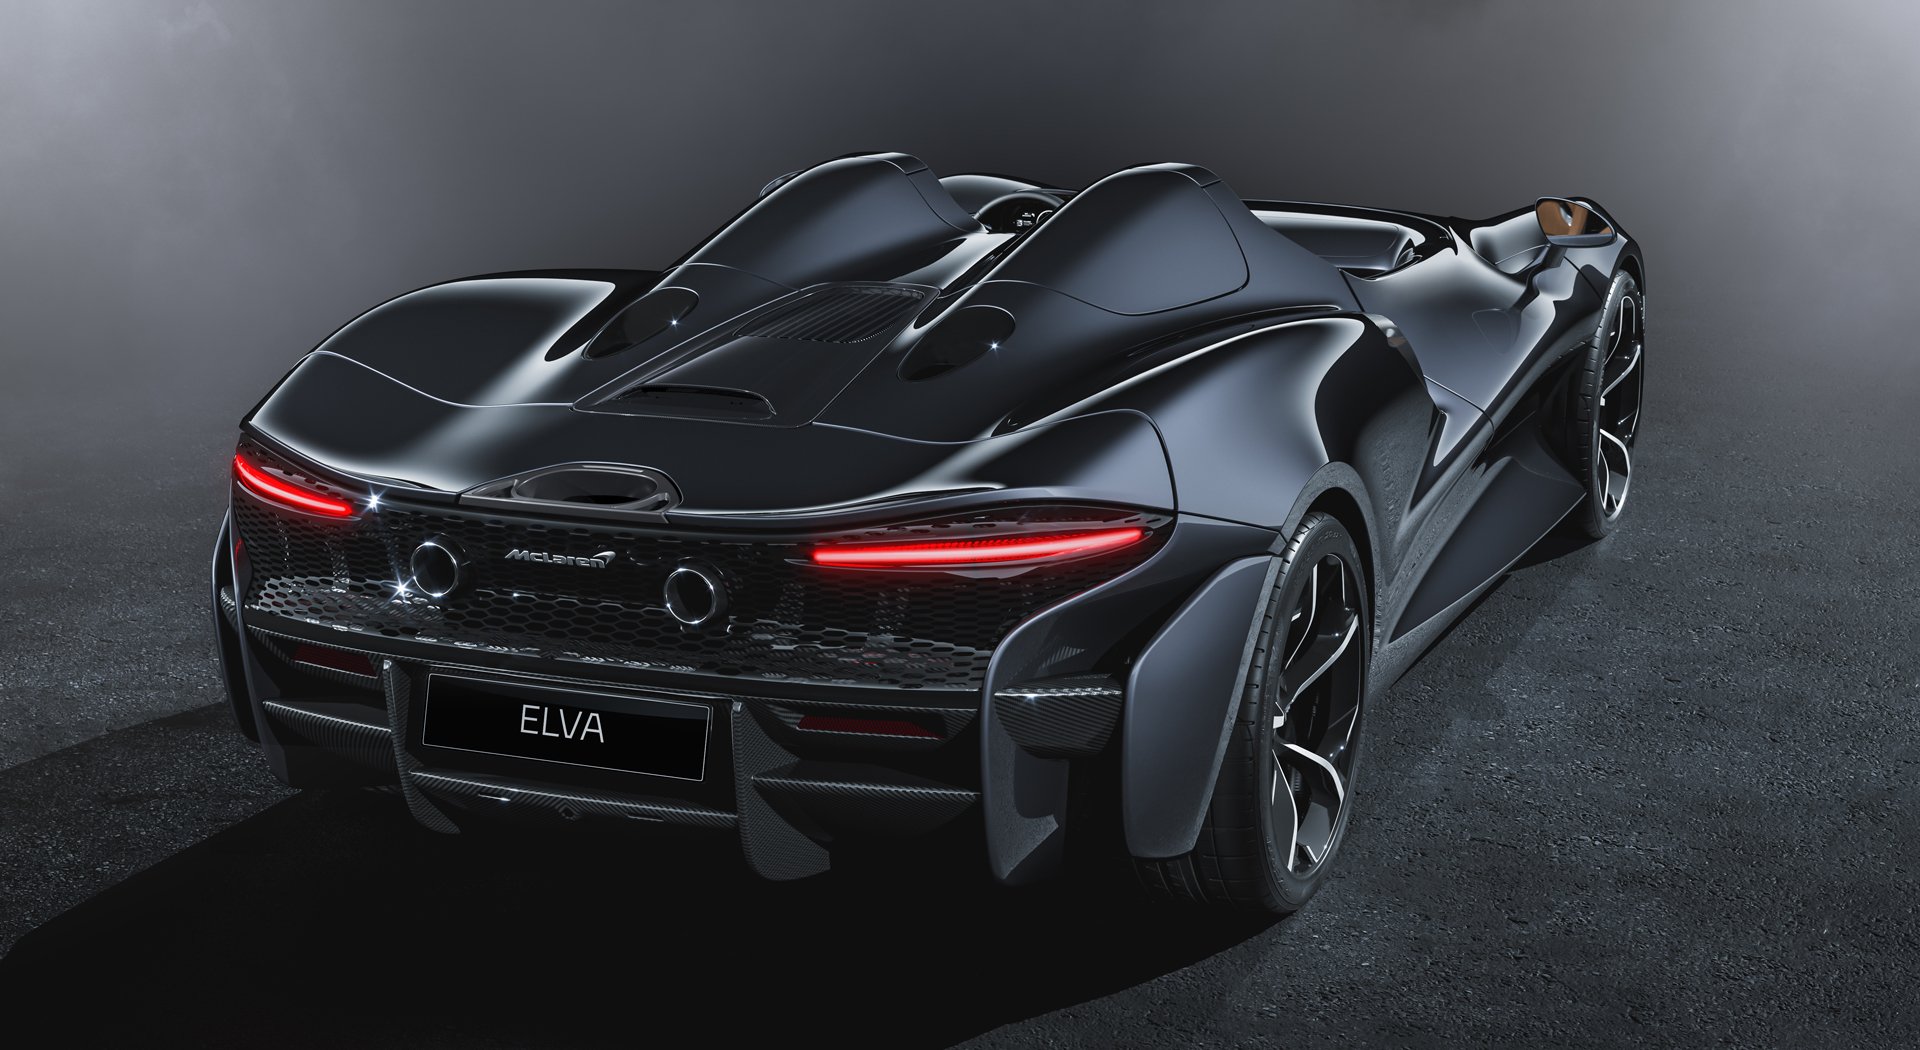 Black McLaren Evla Rear